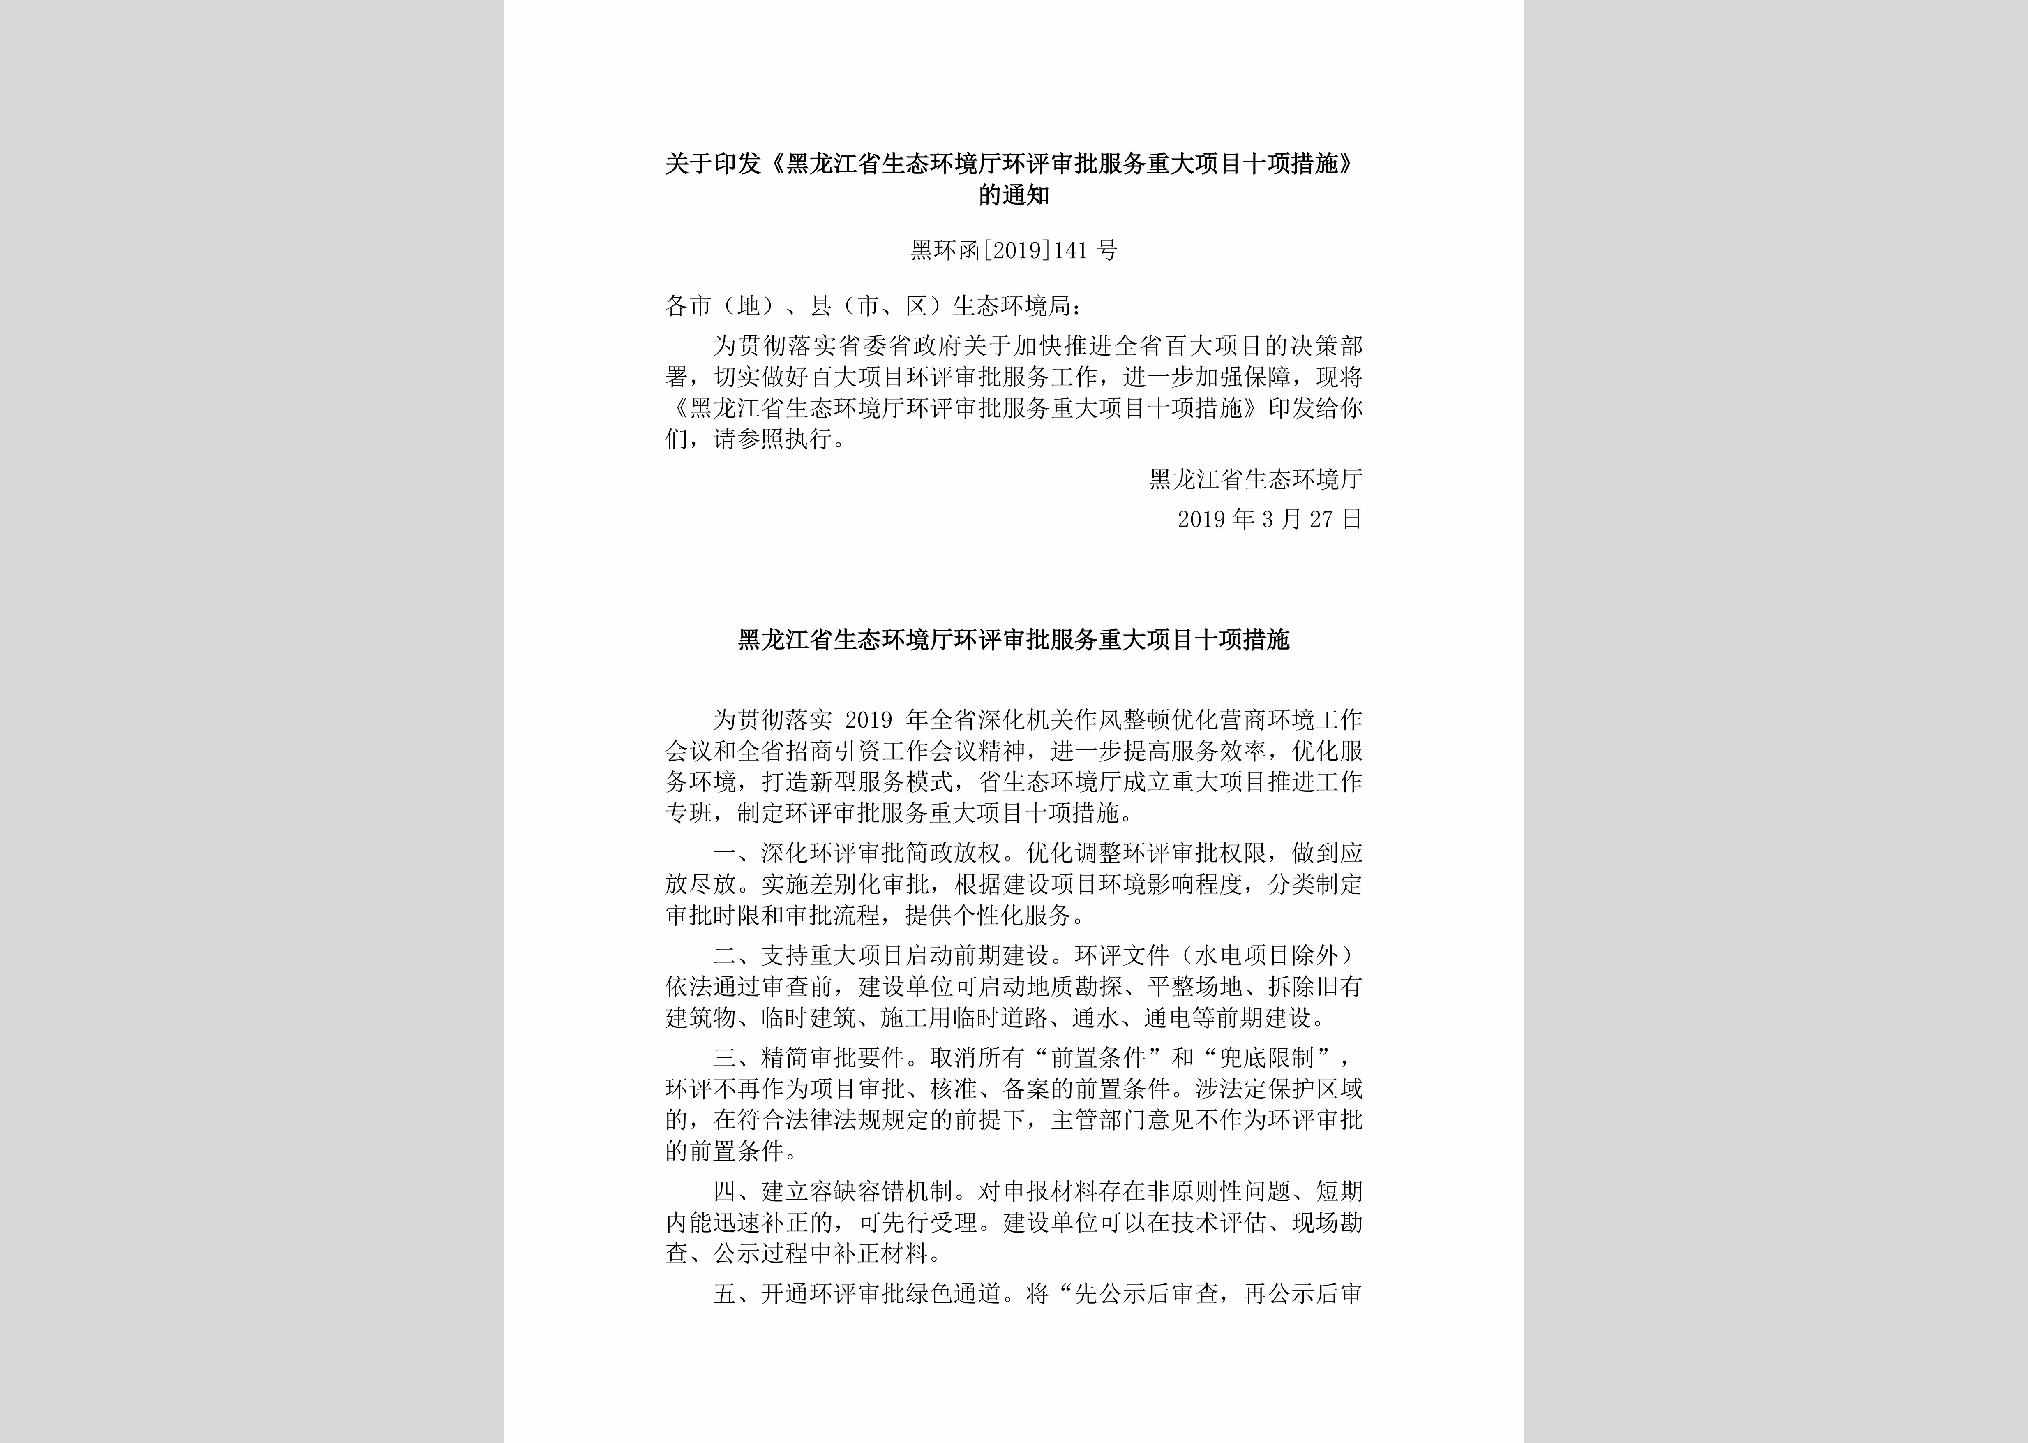 黑环函[2019]141号：关于印发《黑龙江省生态环境厅环评审批服务重大项目十项措施》的通知